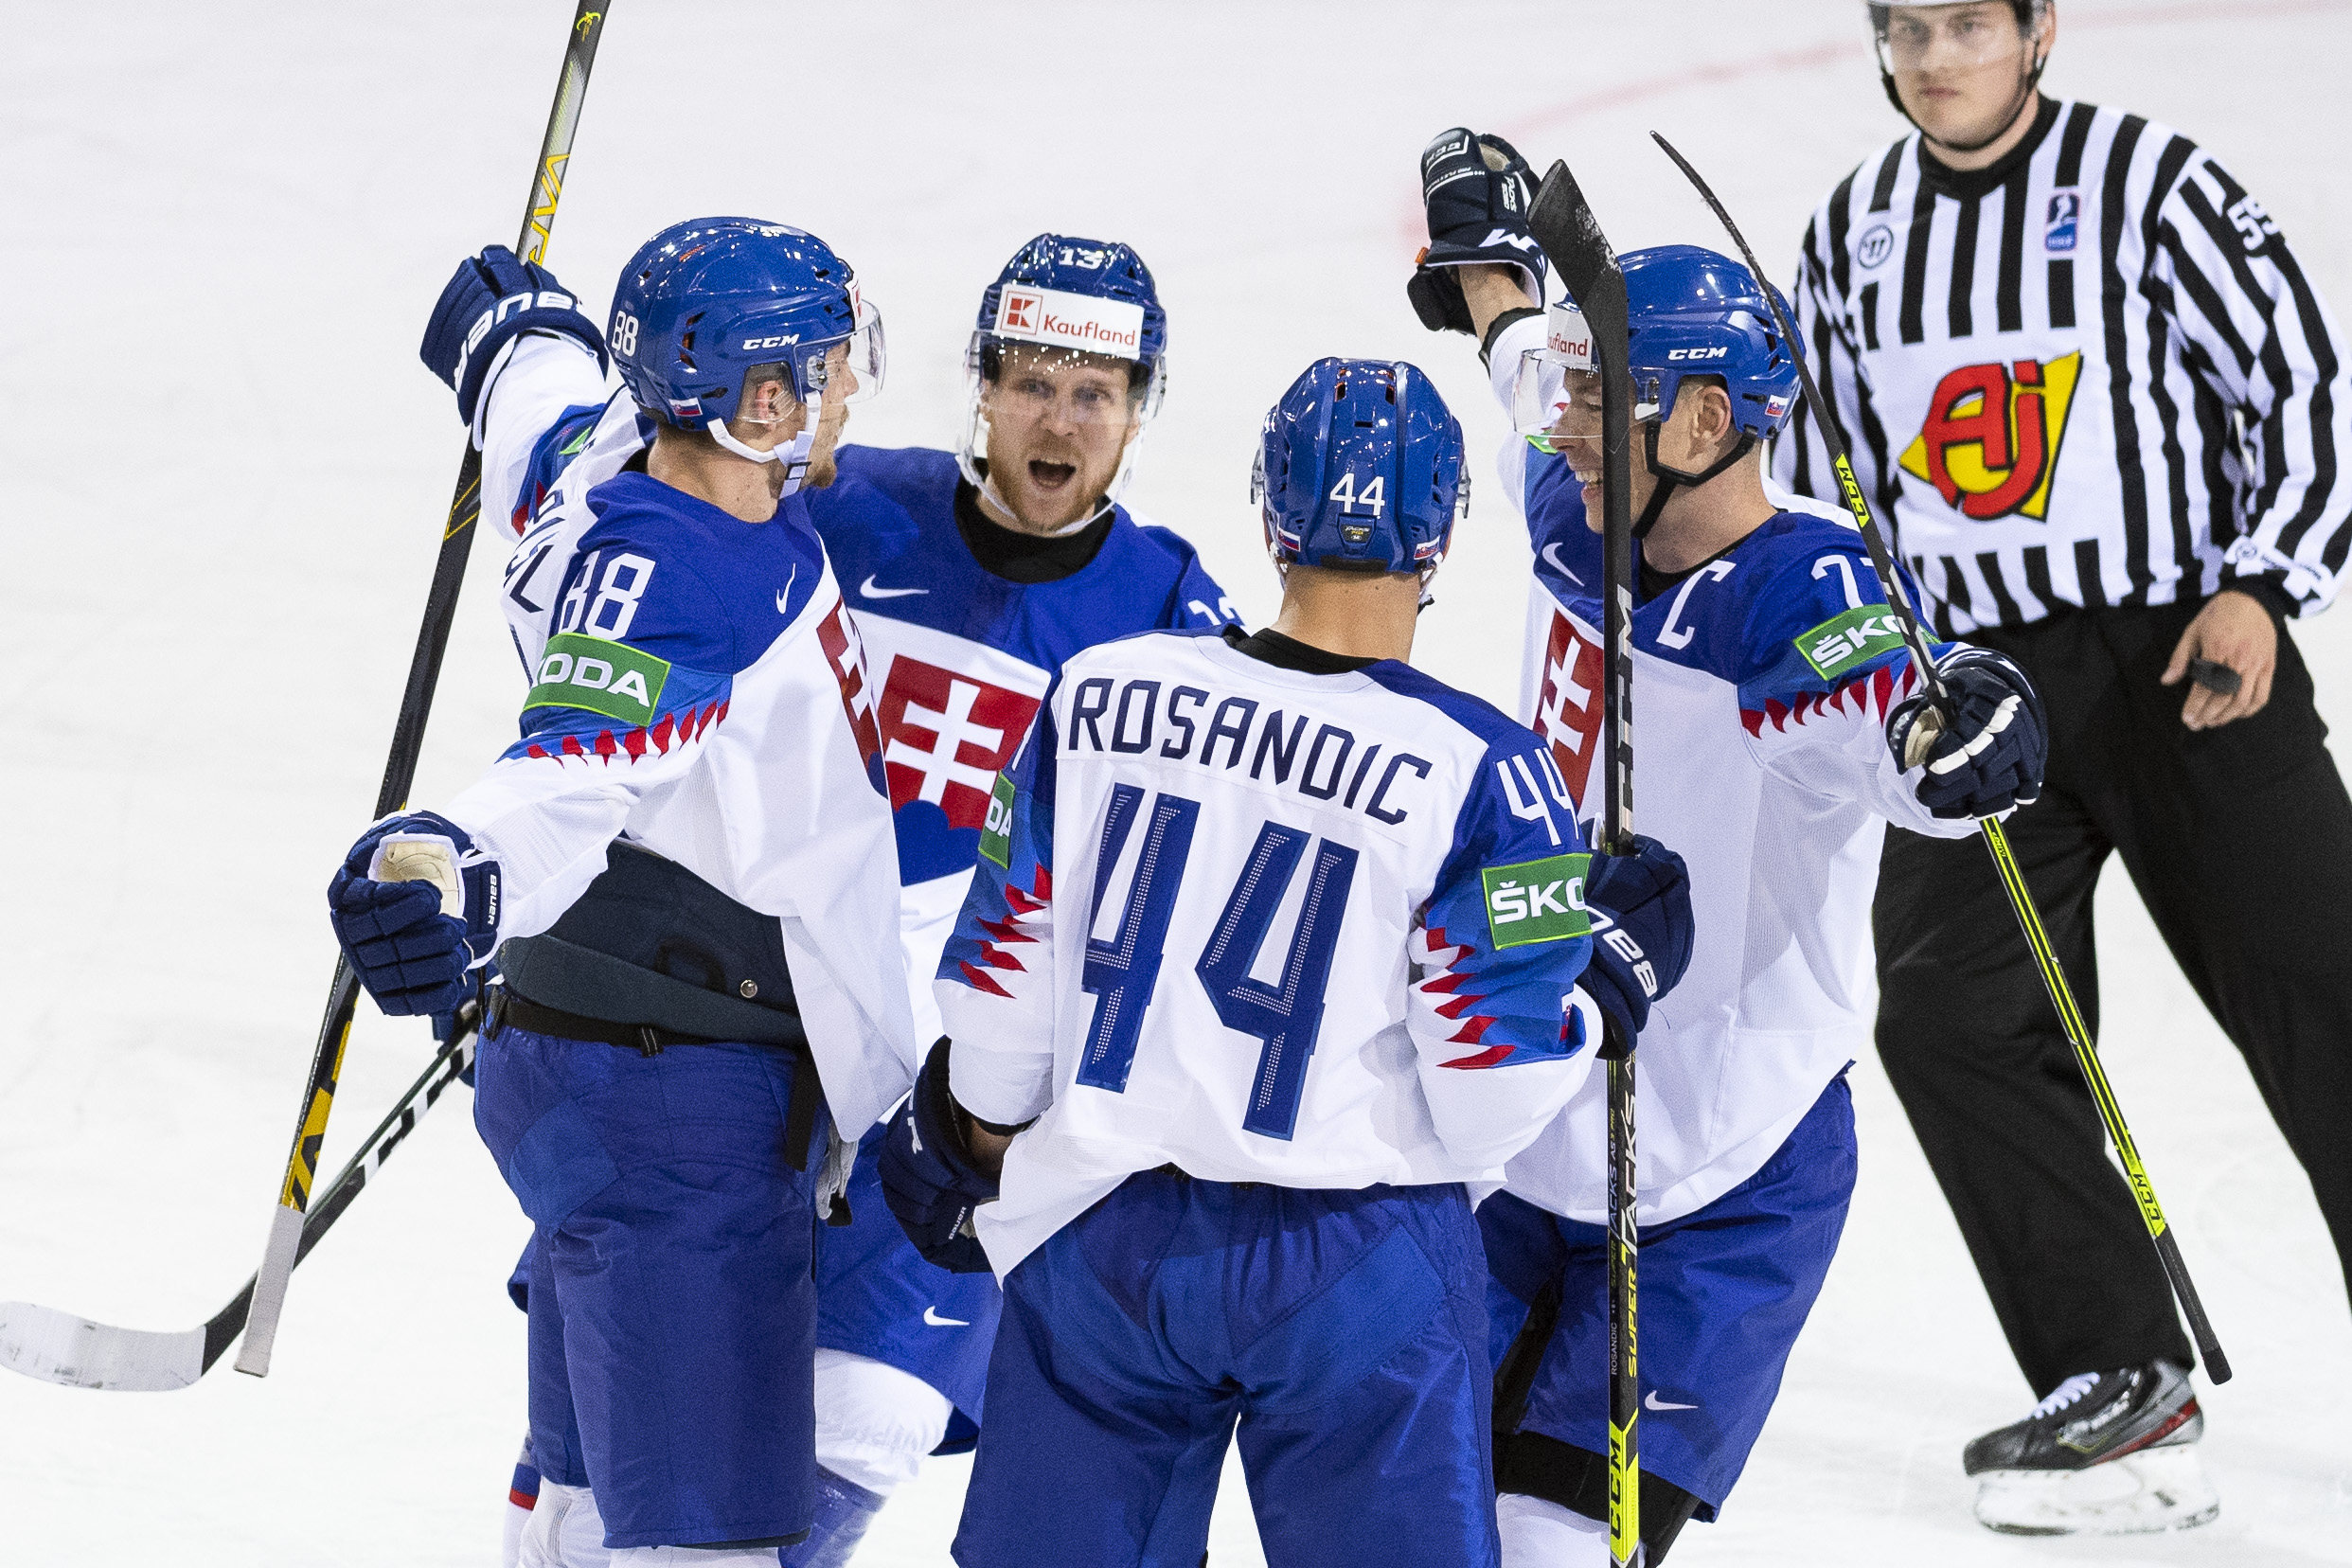 MS v hokeji: Bielorusko - Slovensko 2:5 | Šport.sk